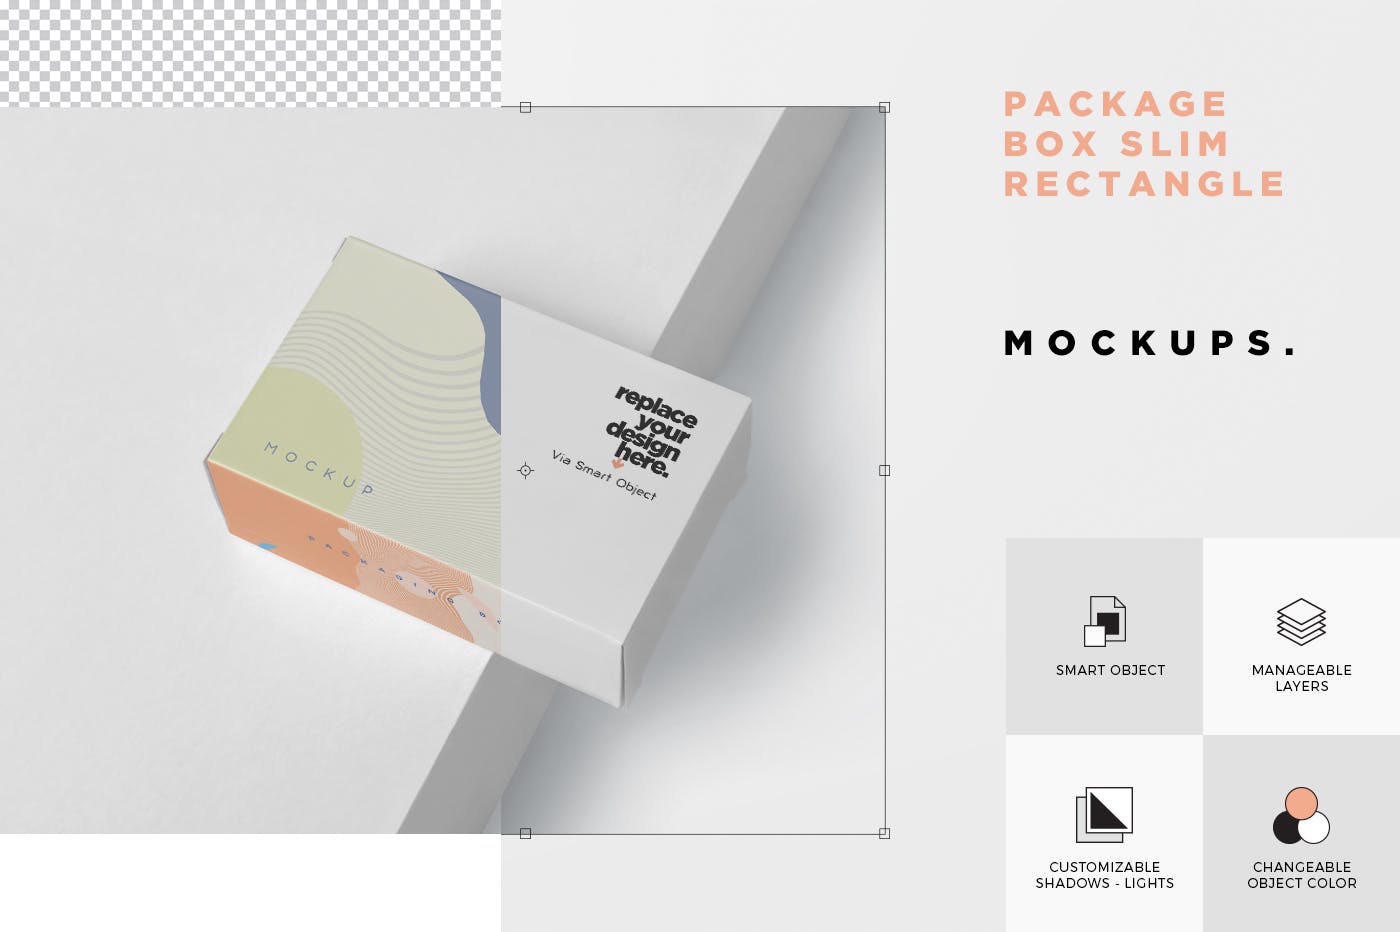 扁平矩形产品包装盒效果图非凡图库精选 Package Box Mockup – Slim Rectangle Shape插图(6)